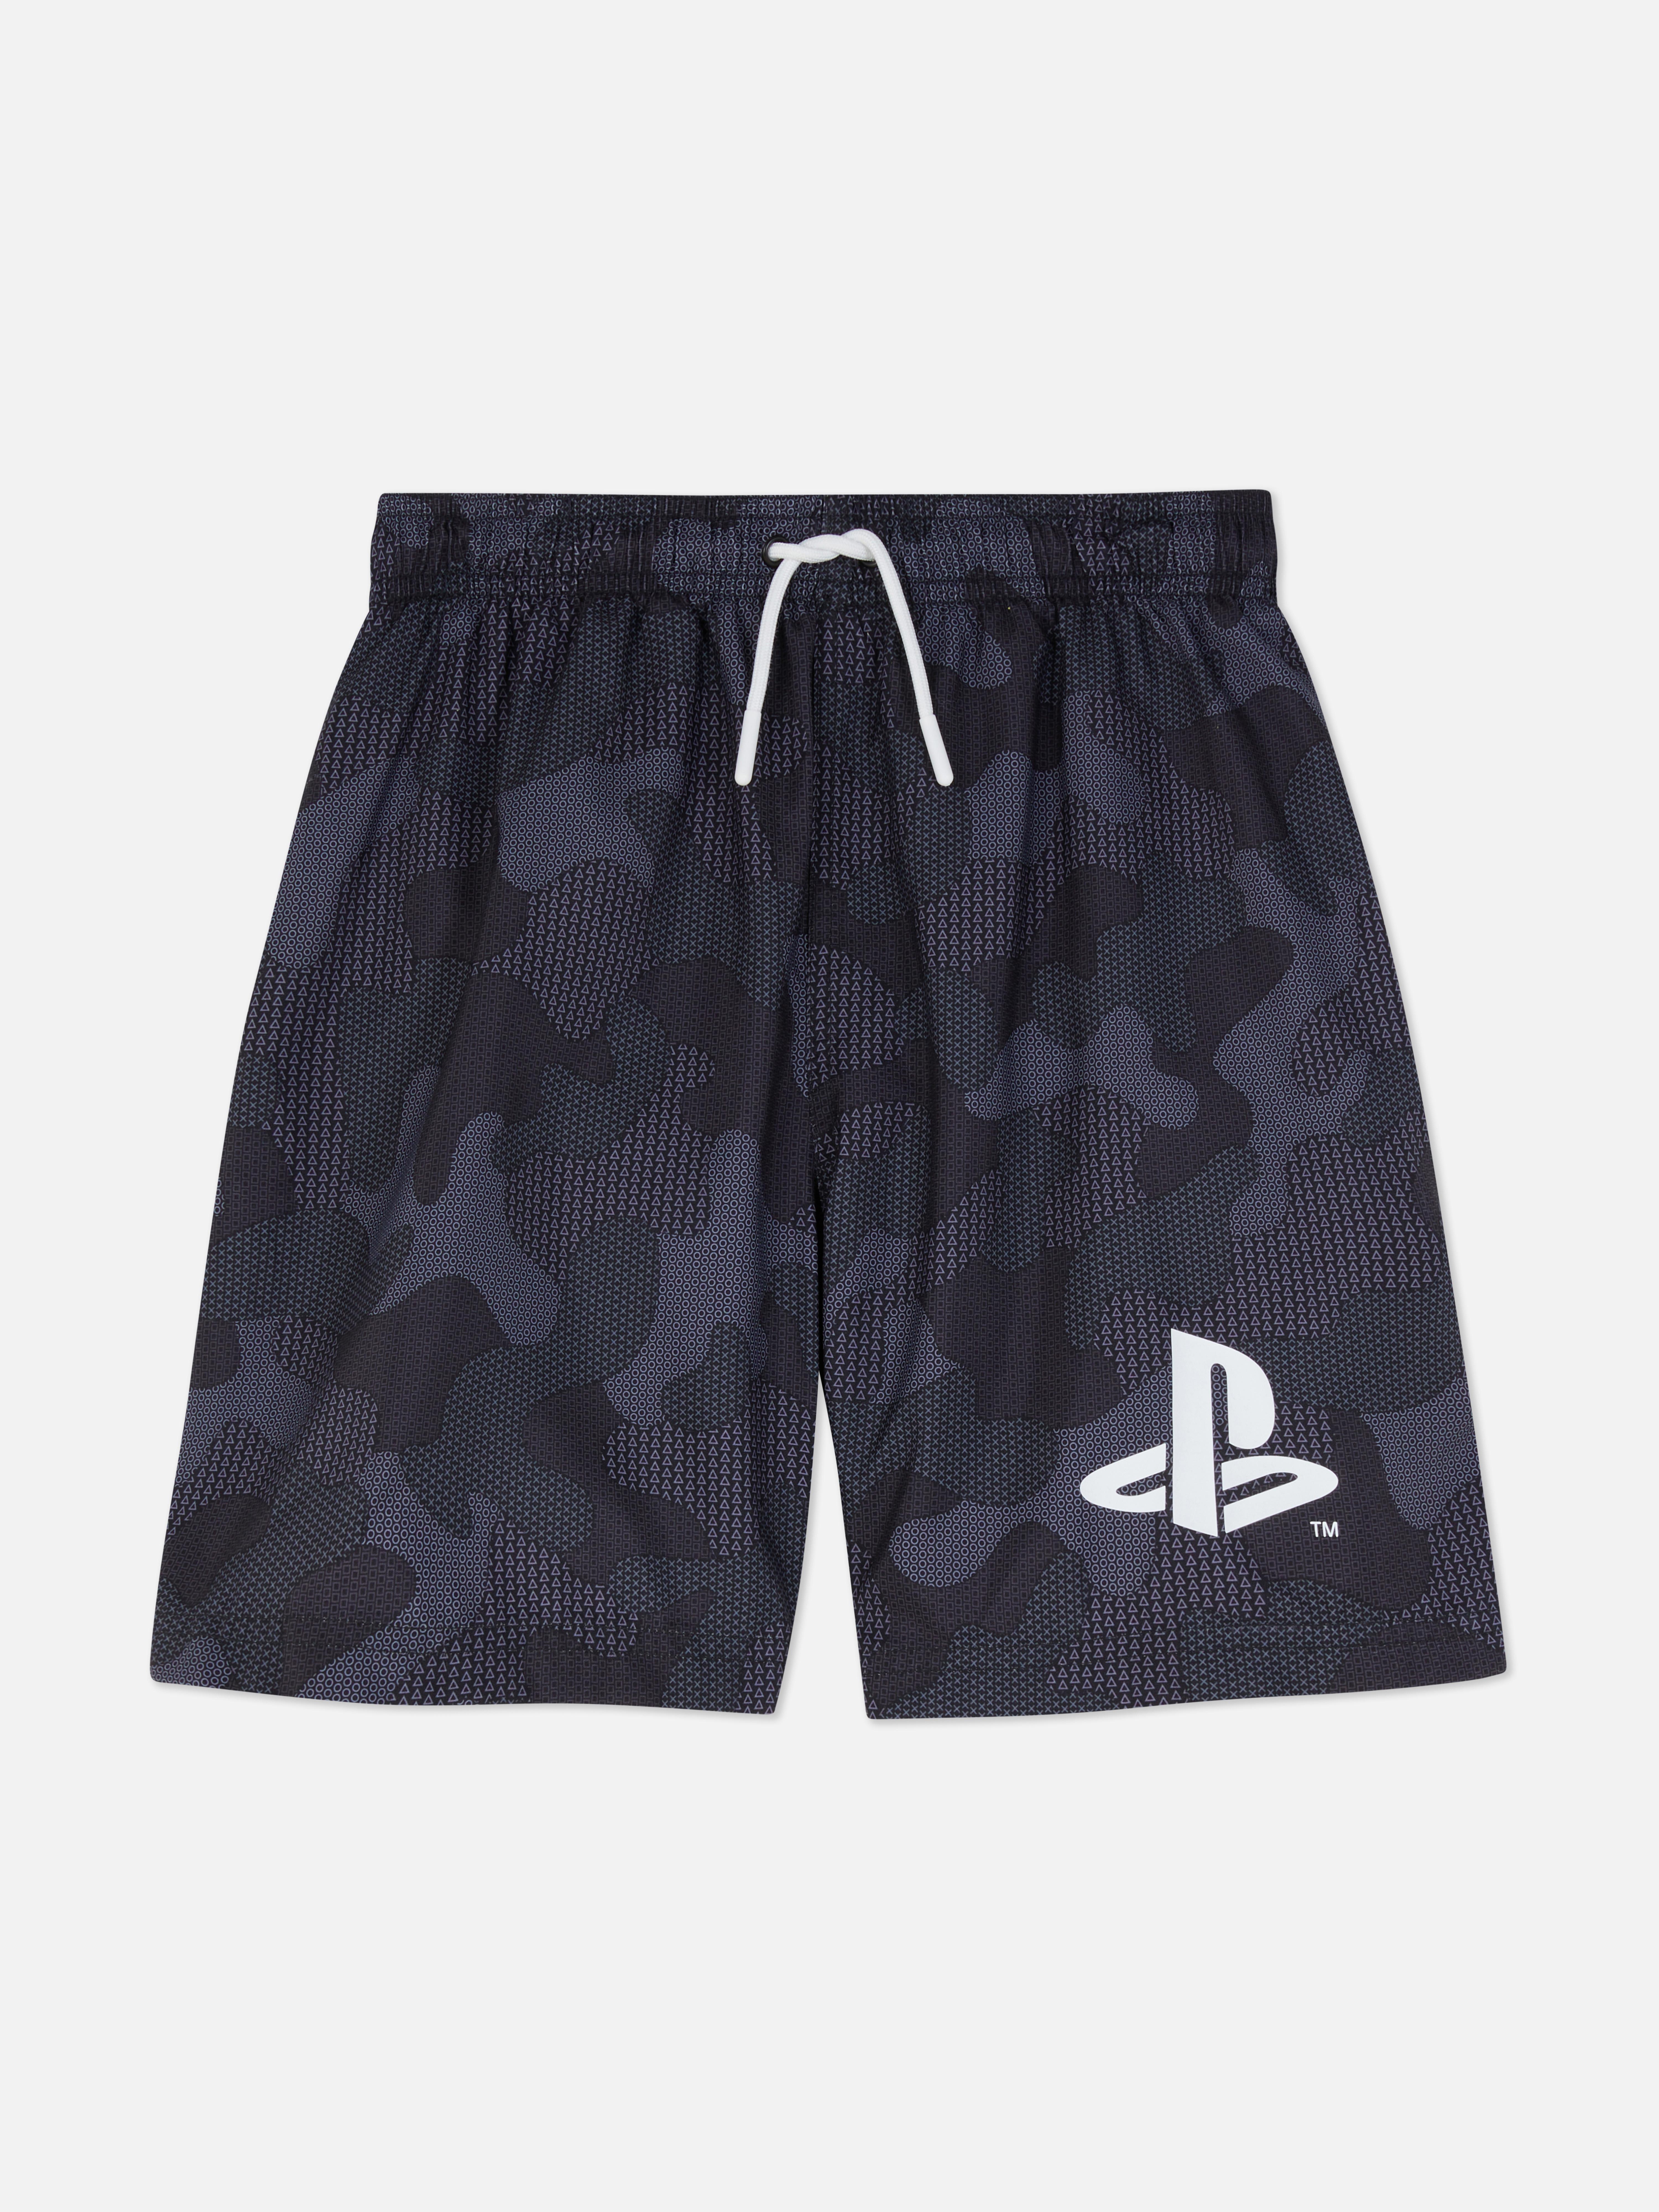 Playstation Elasticated Shorts